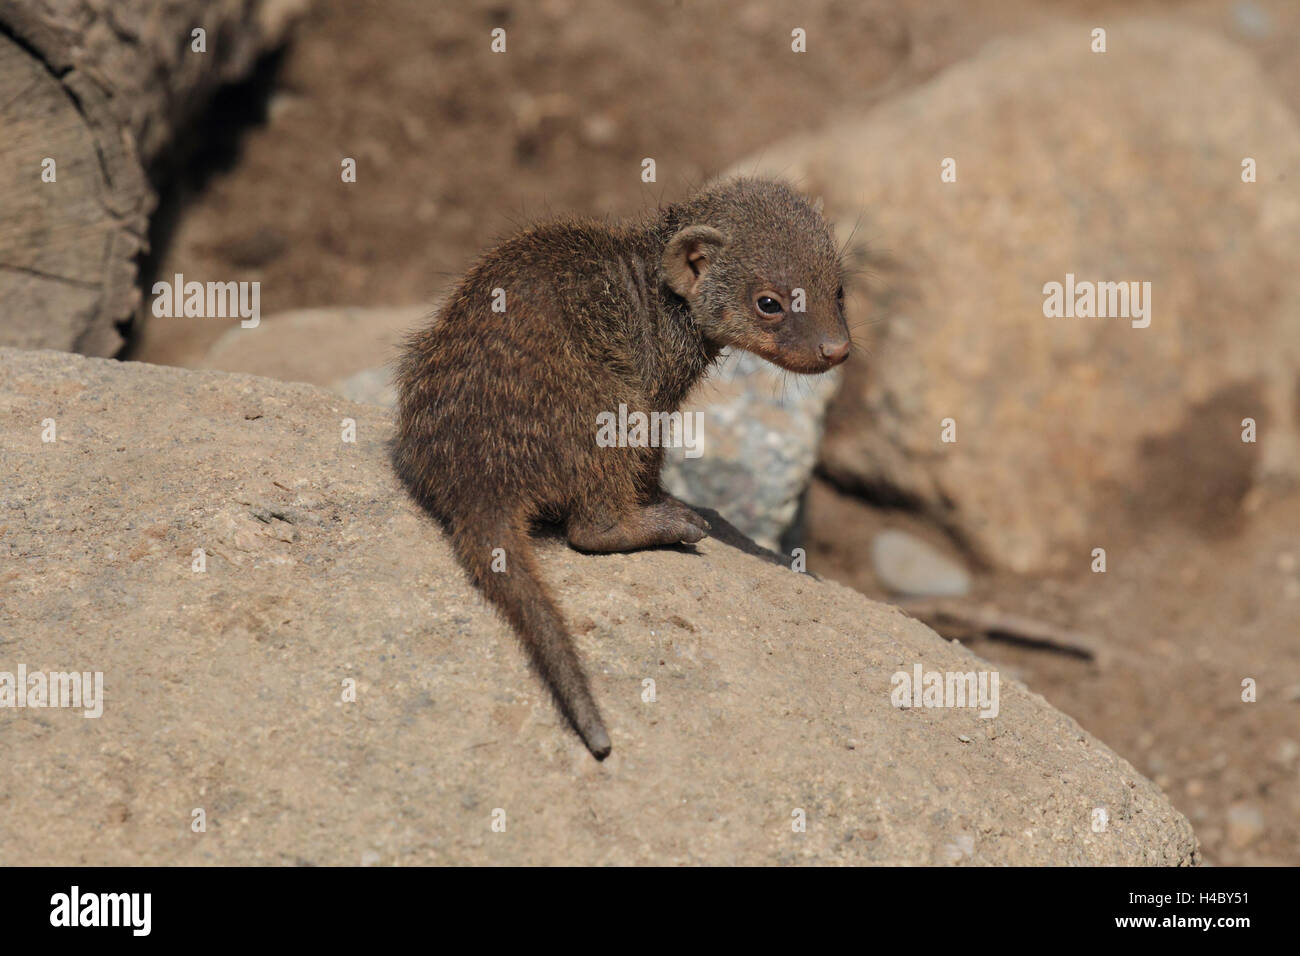 Banded mongoose young animal, Mungos mungo Stock Photo